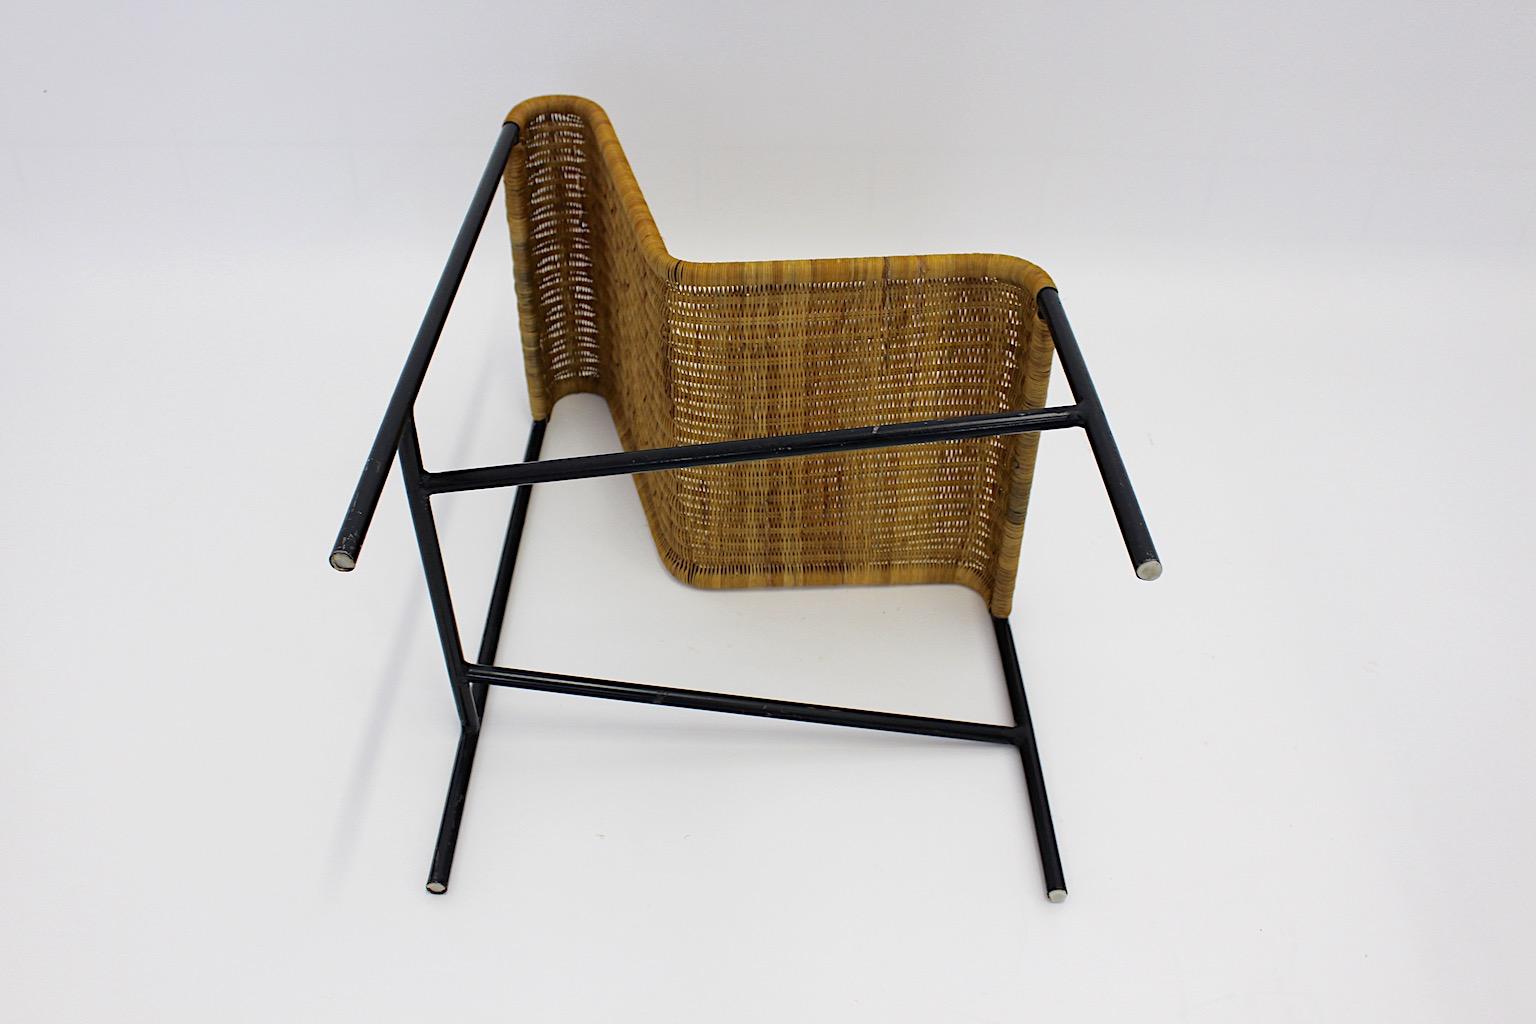 Organic Moder Mid Century Modern Vintage Chair Harold Cohen Davis Pratt 1953 USA In Good Condition For Sale In Vienna, AT